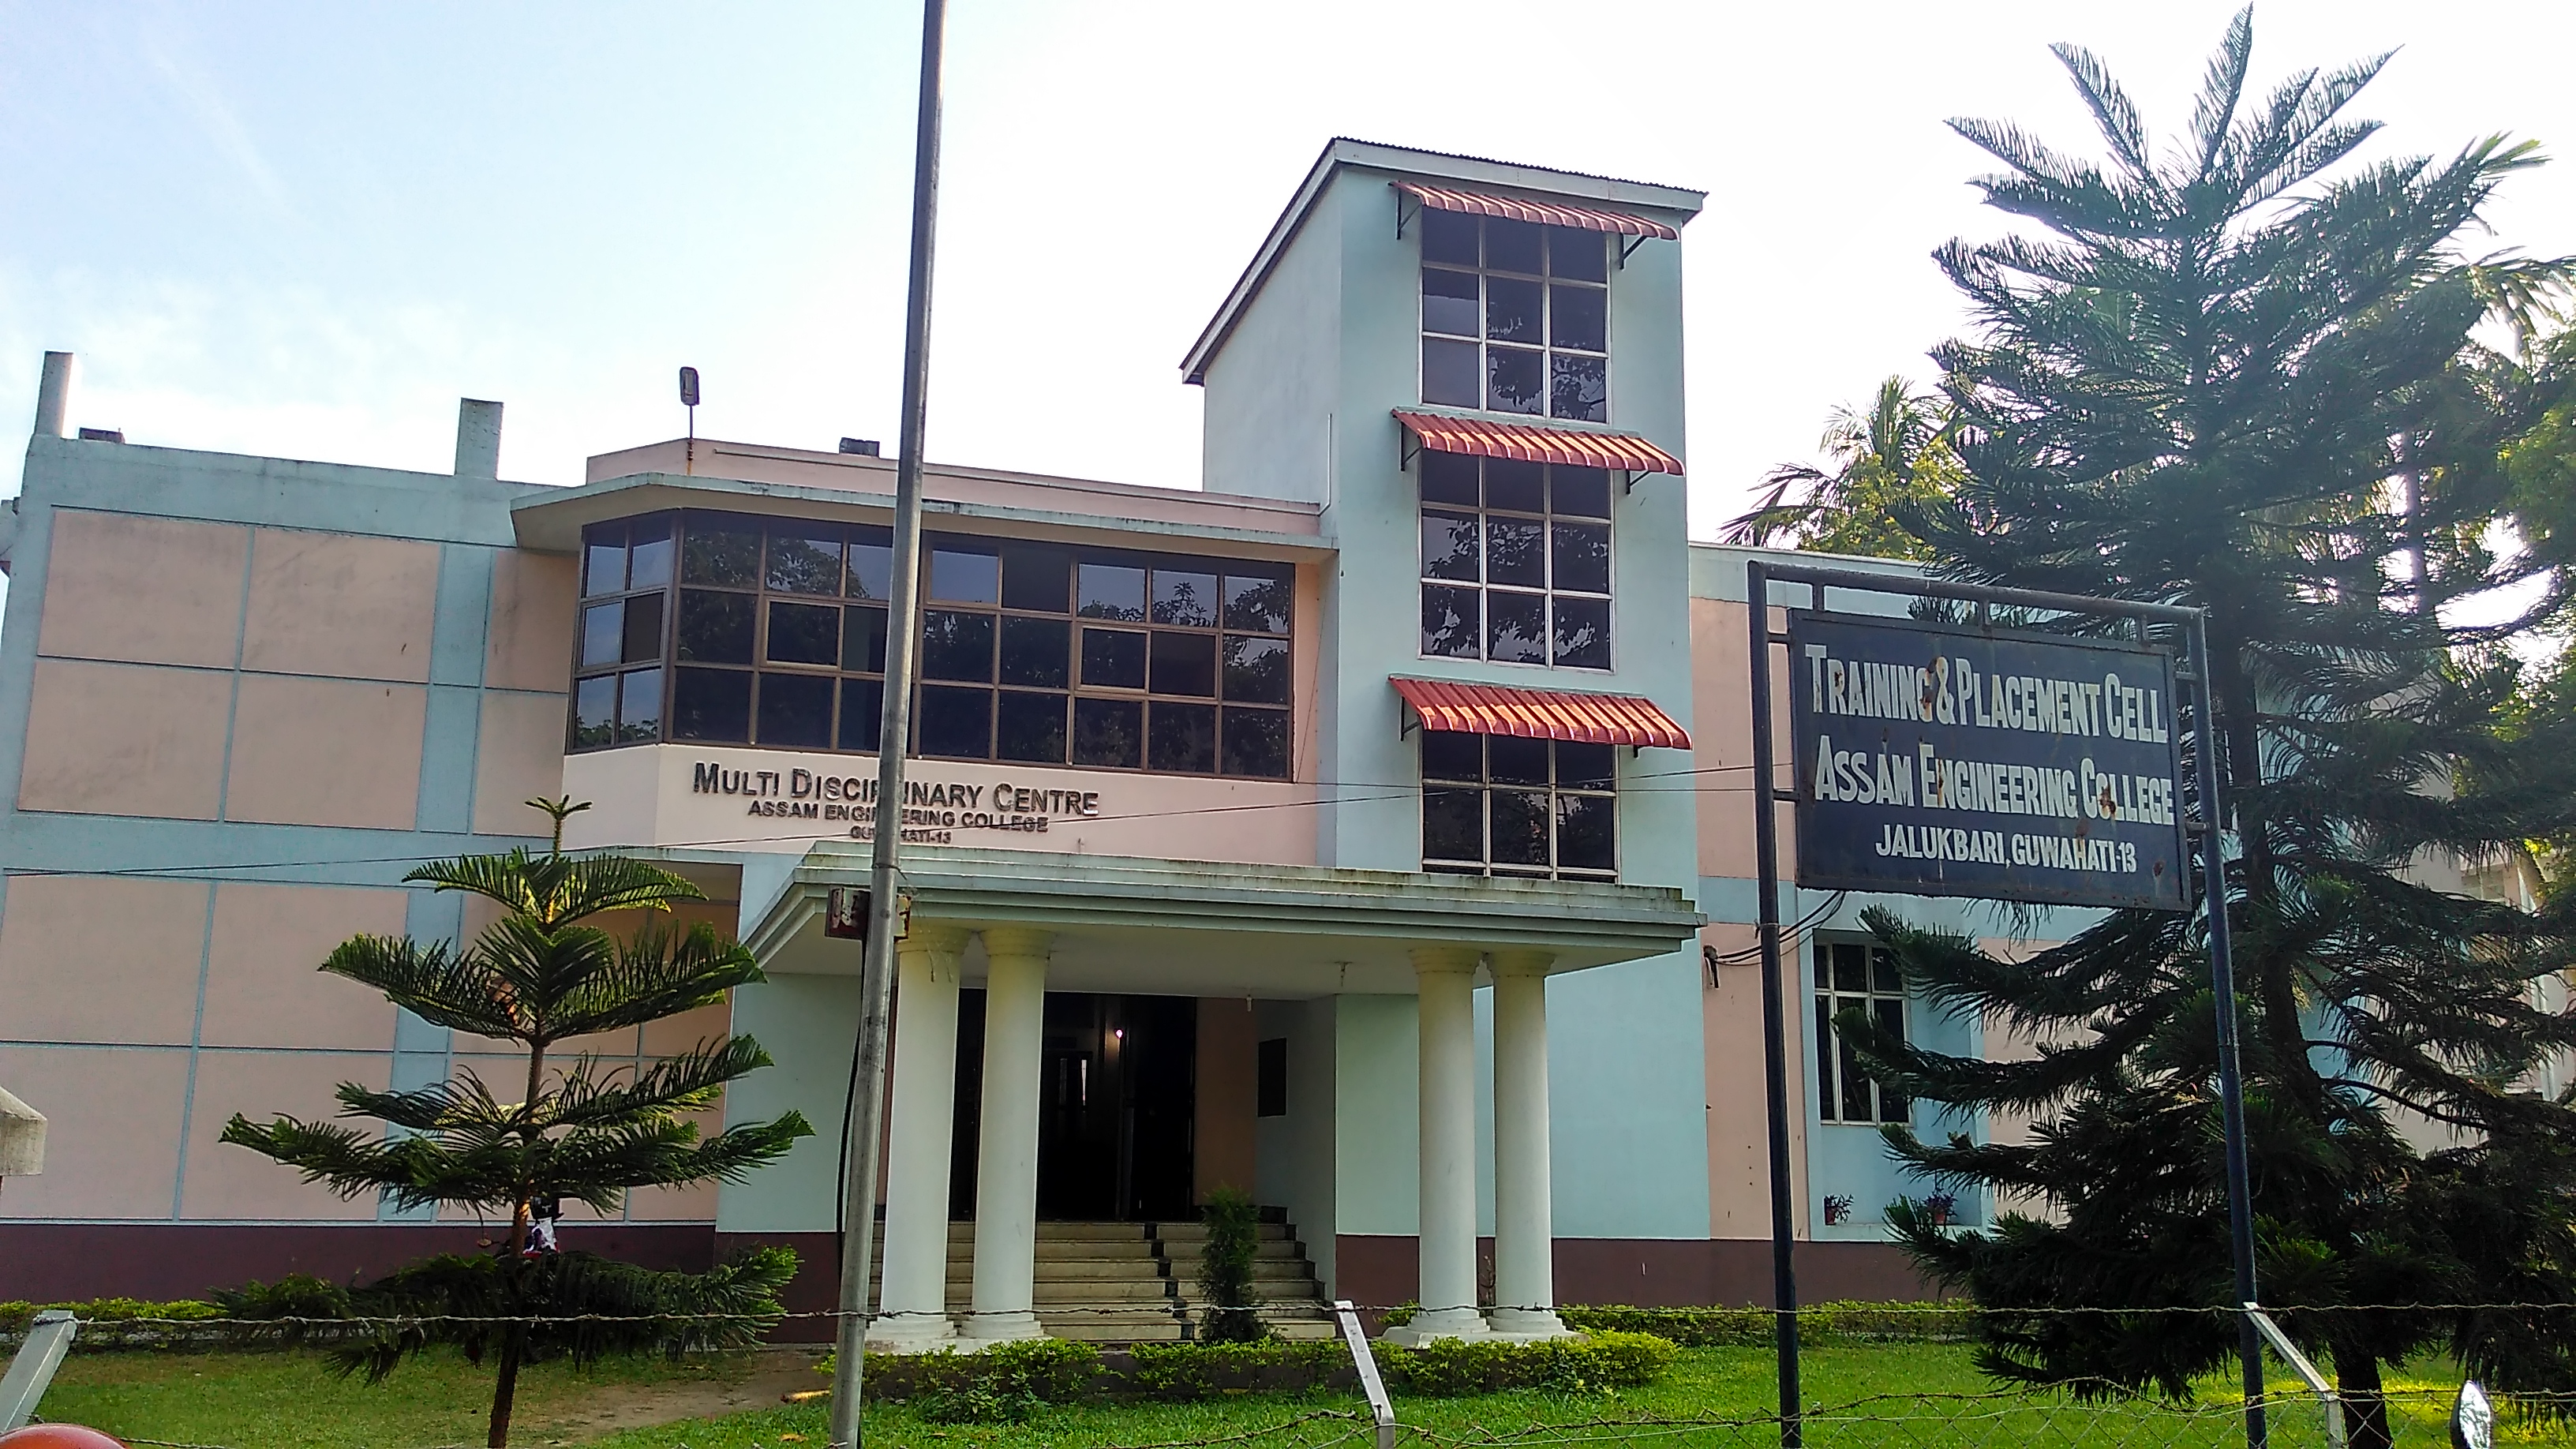 Multi-Disciplinary Centre (MDC) complex